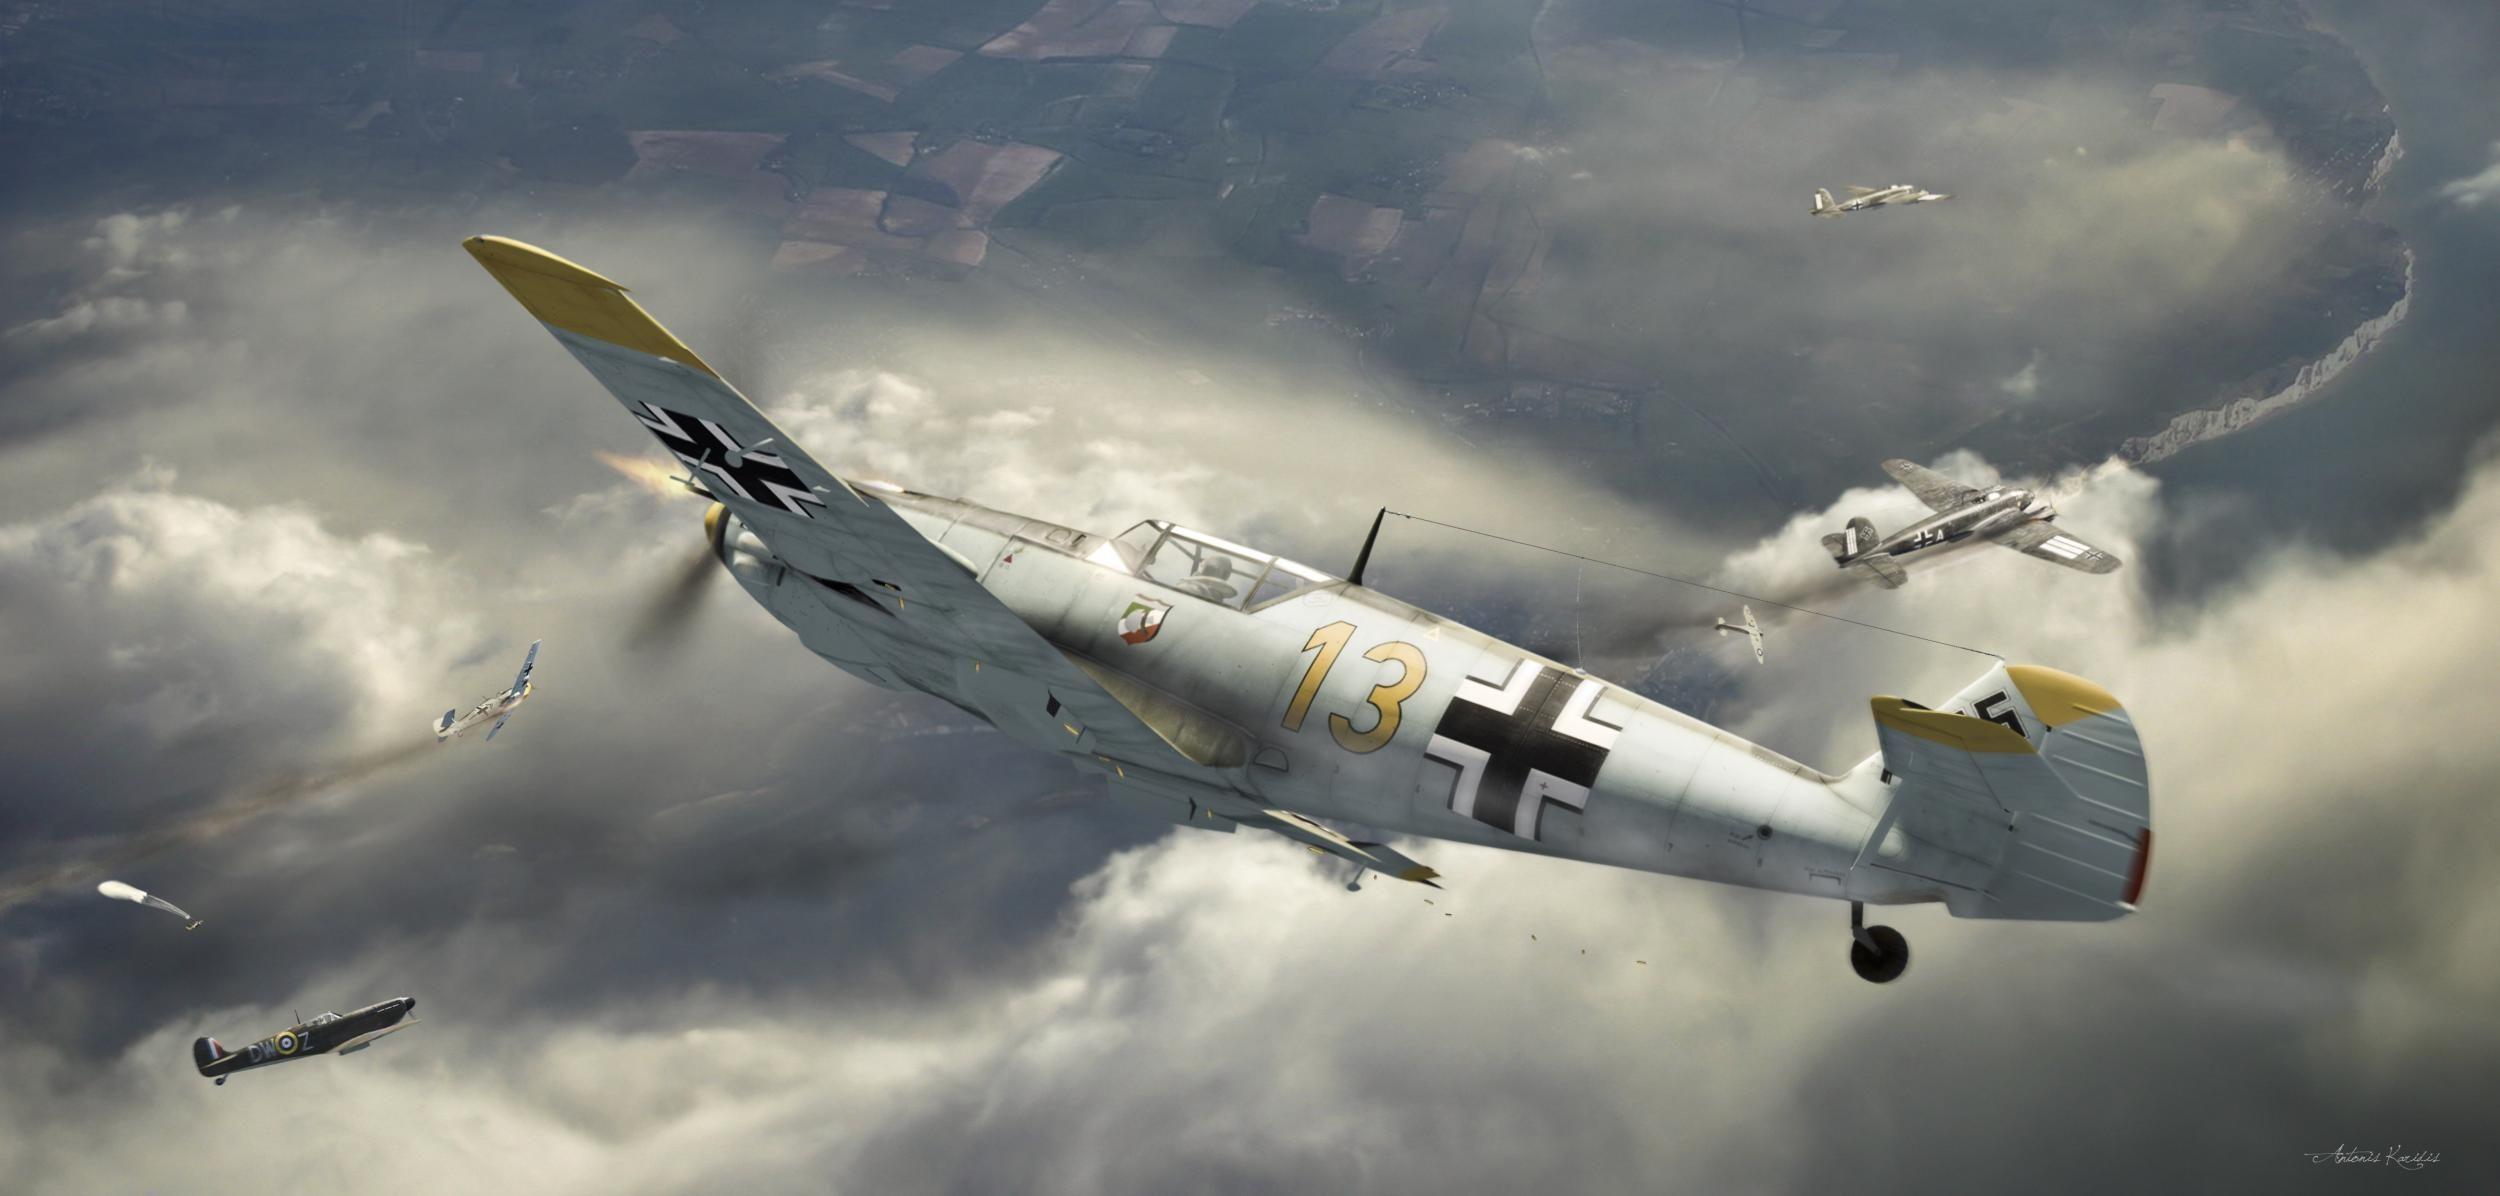 Messerschmitt Bf 109 E Full HD Wallpaper And Background